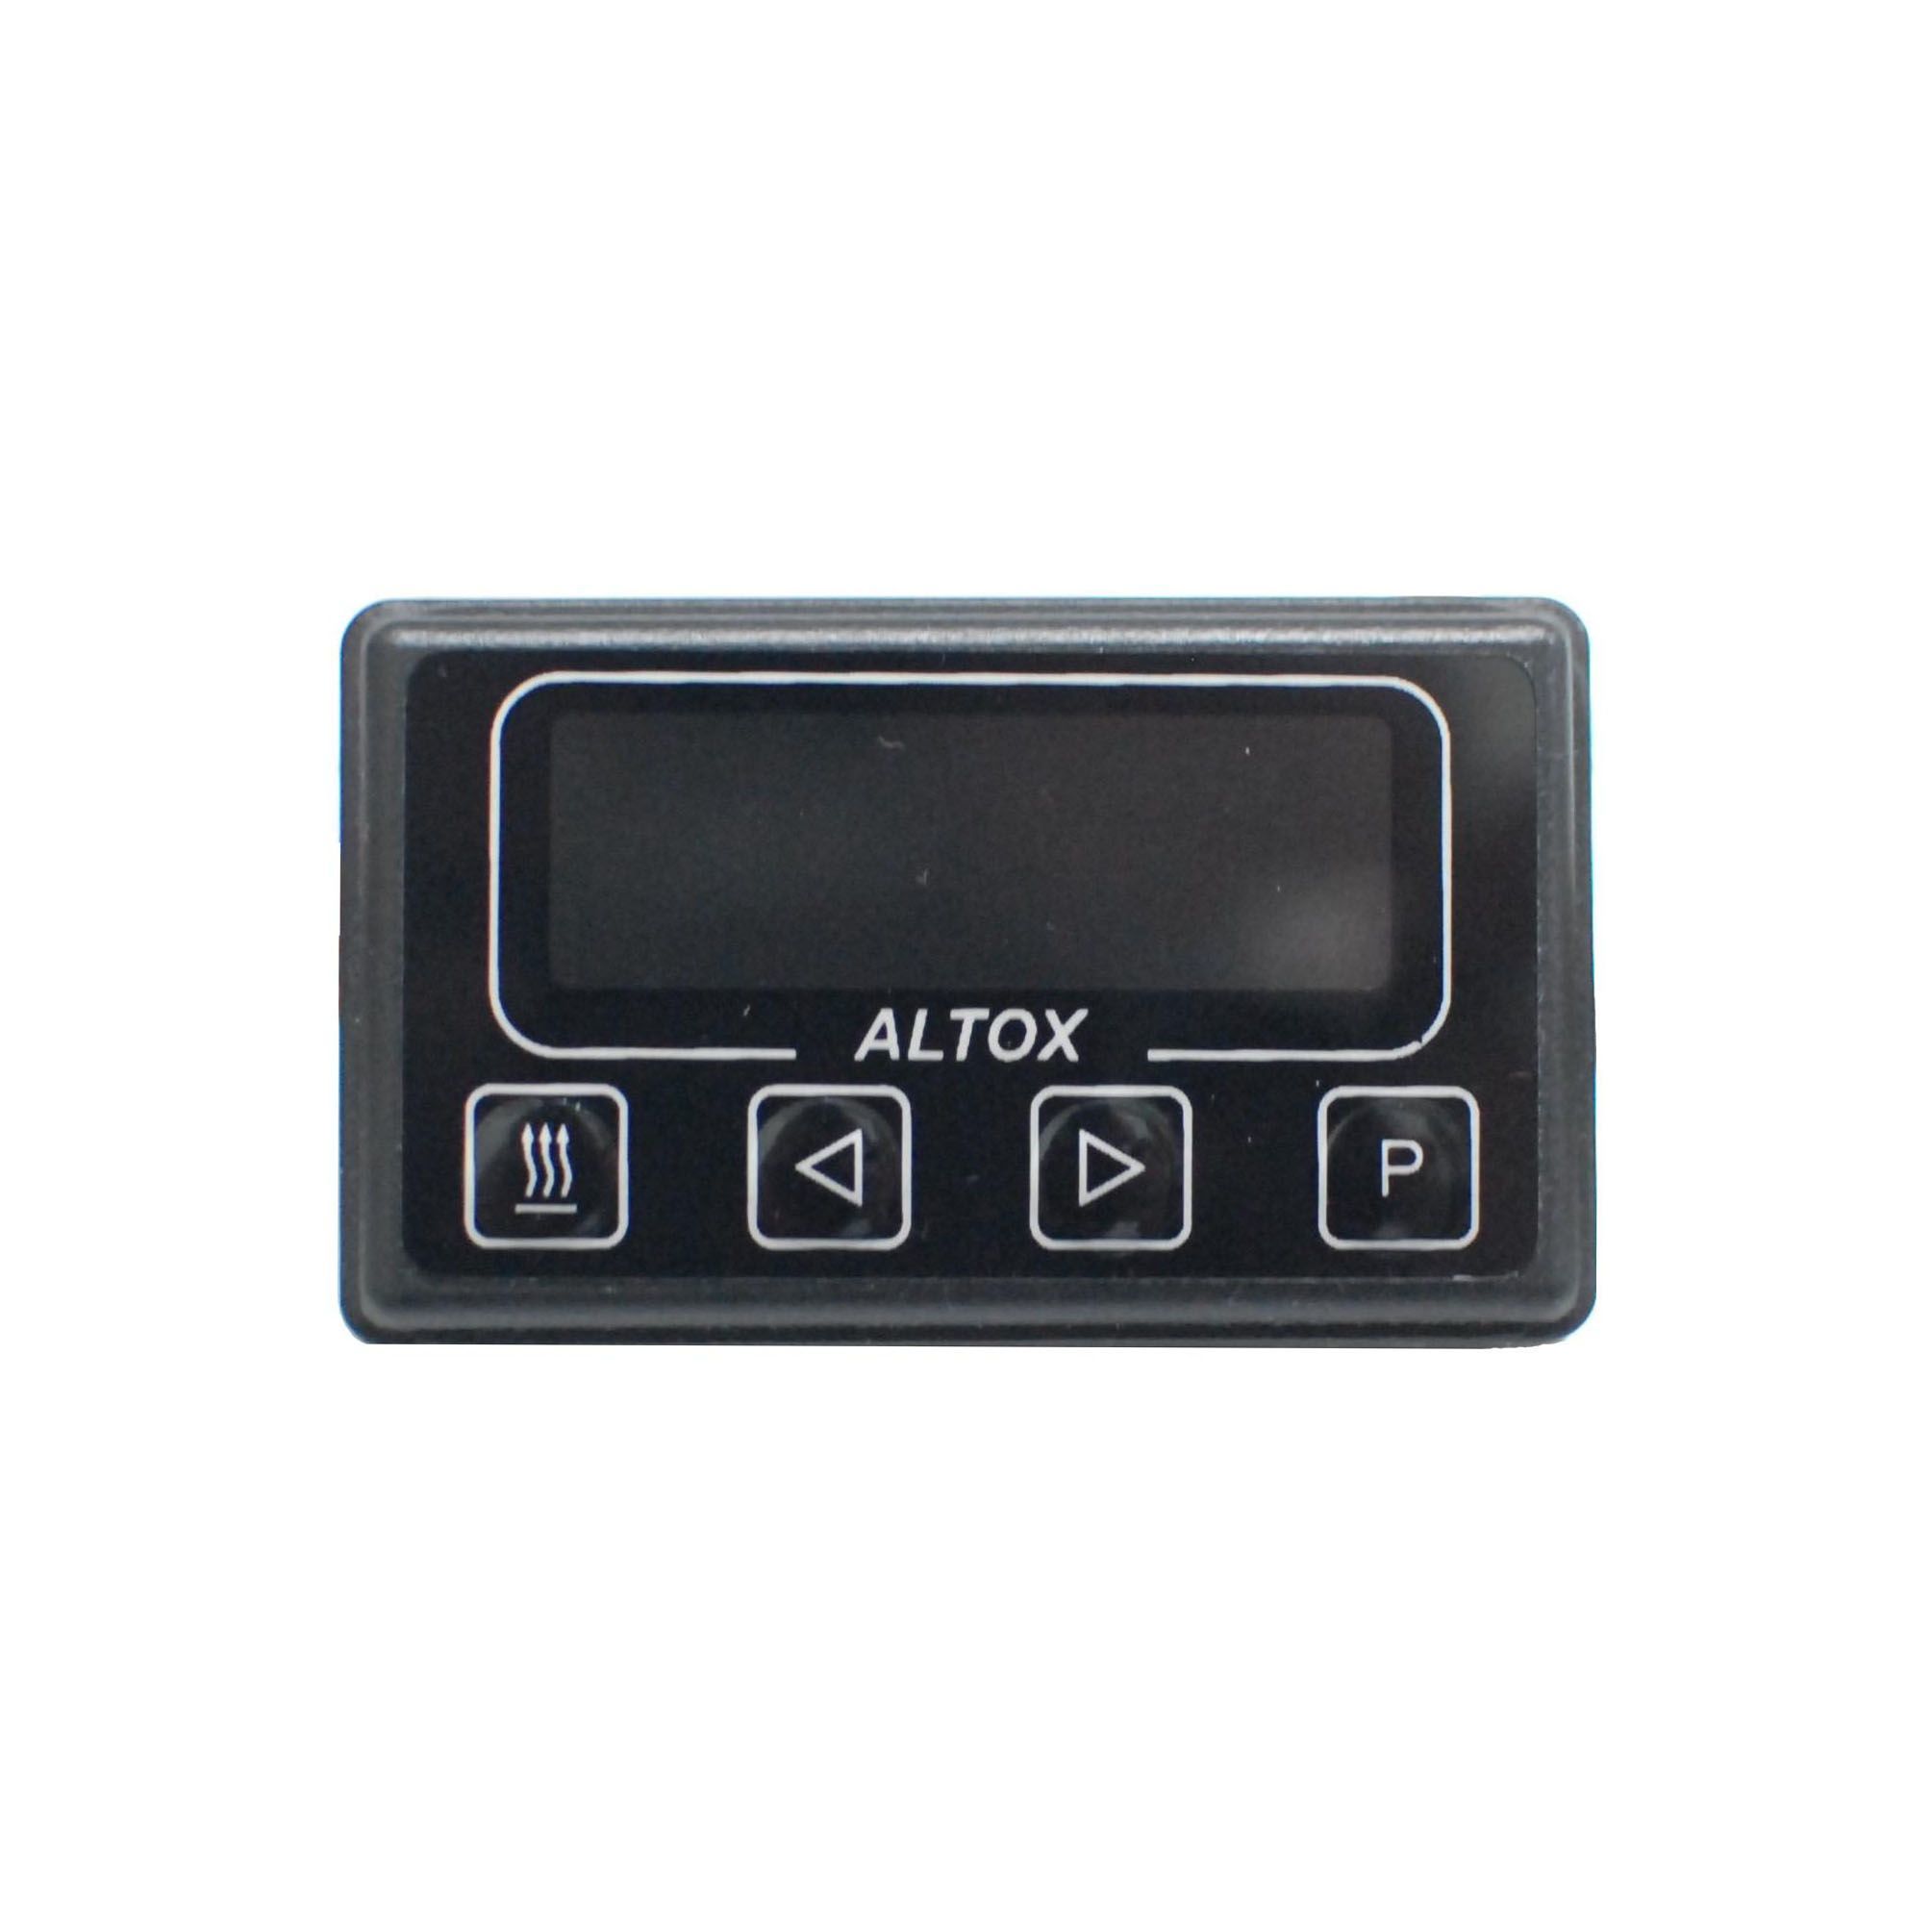 Таймер для Webasto ALTOX. ALTOX пульт управления вебасто. ALTOX timer-2. Минитаймер Webasto. Таймер webasto